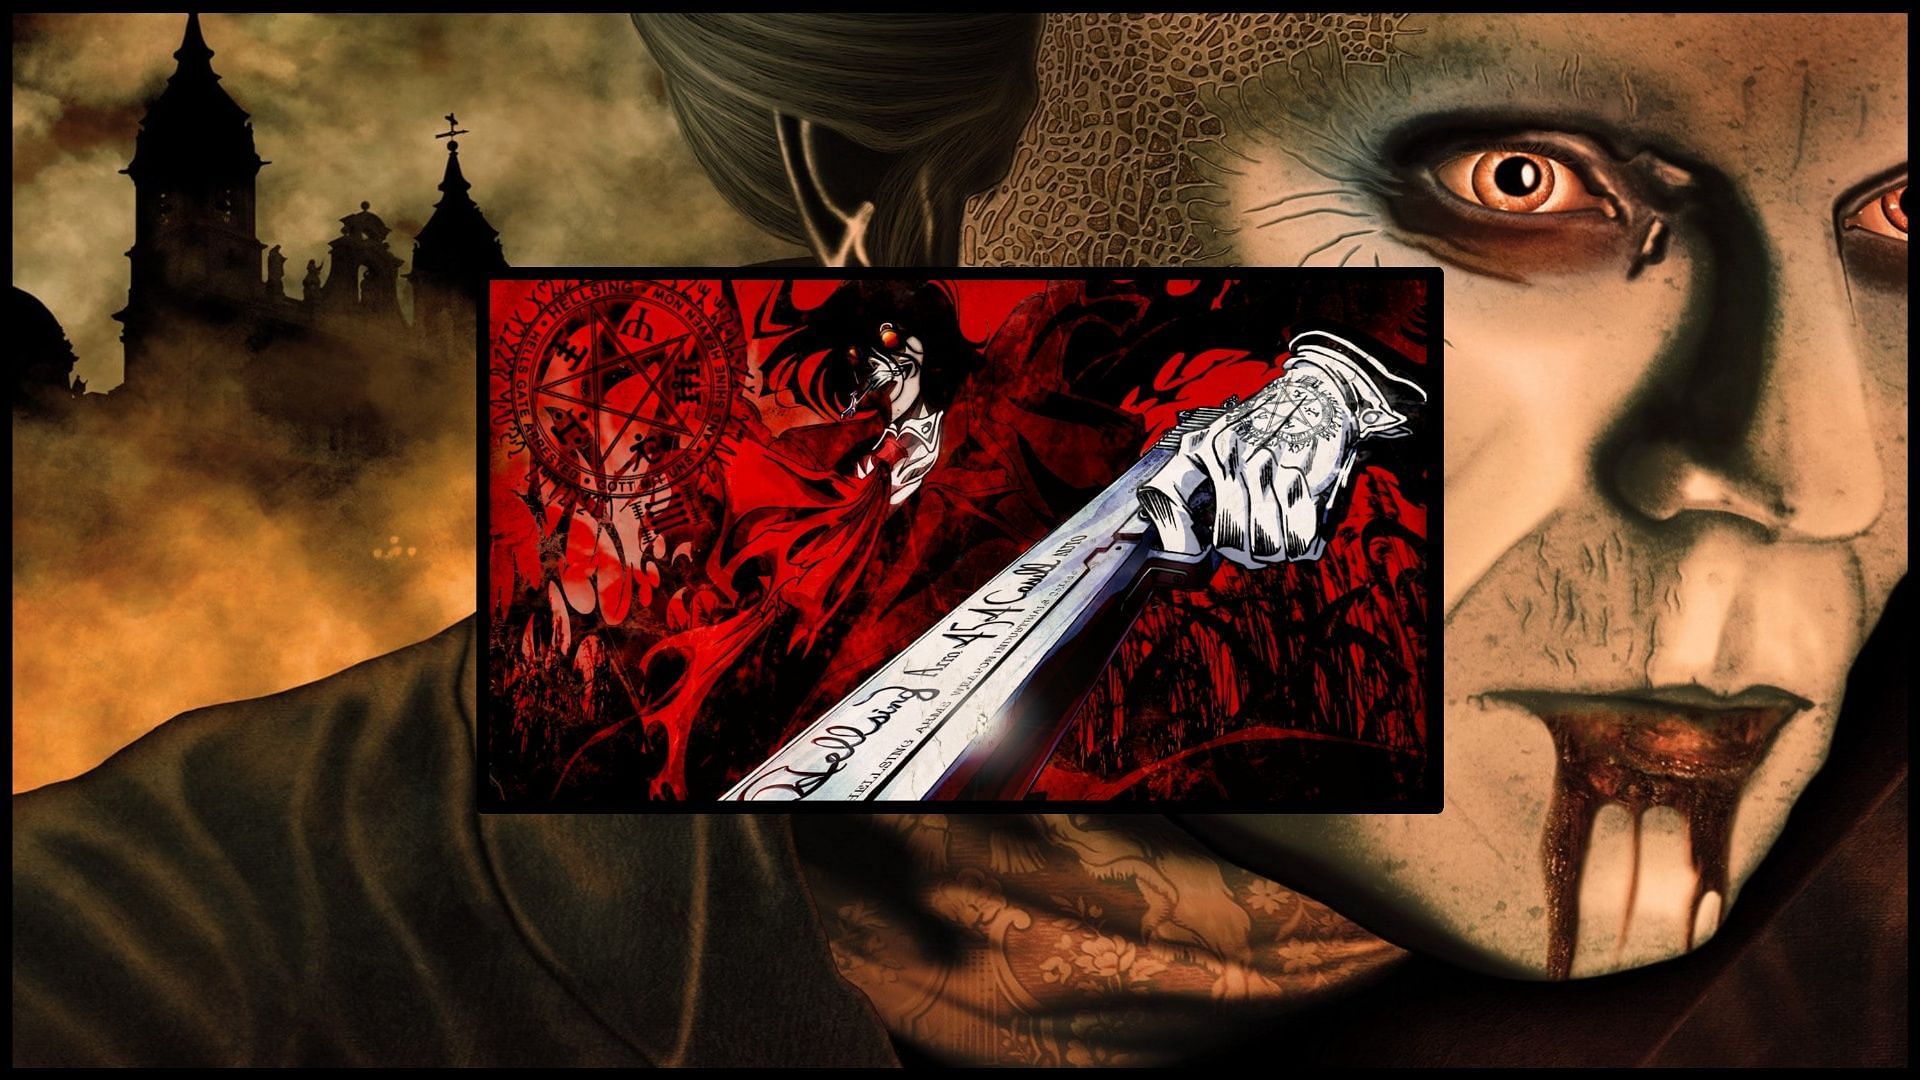 Hellsing anime cover [foreground], Bram Stoker